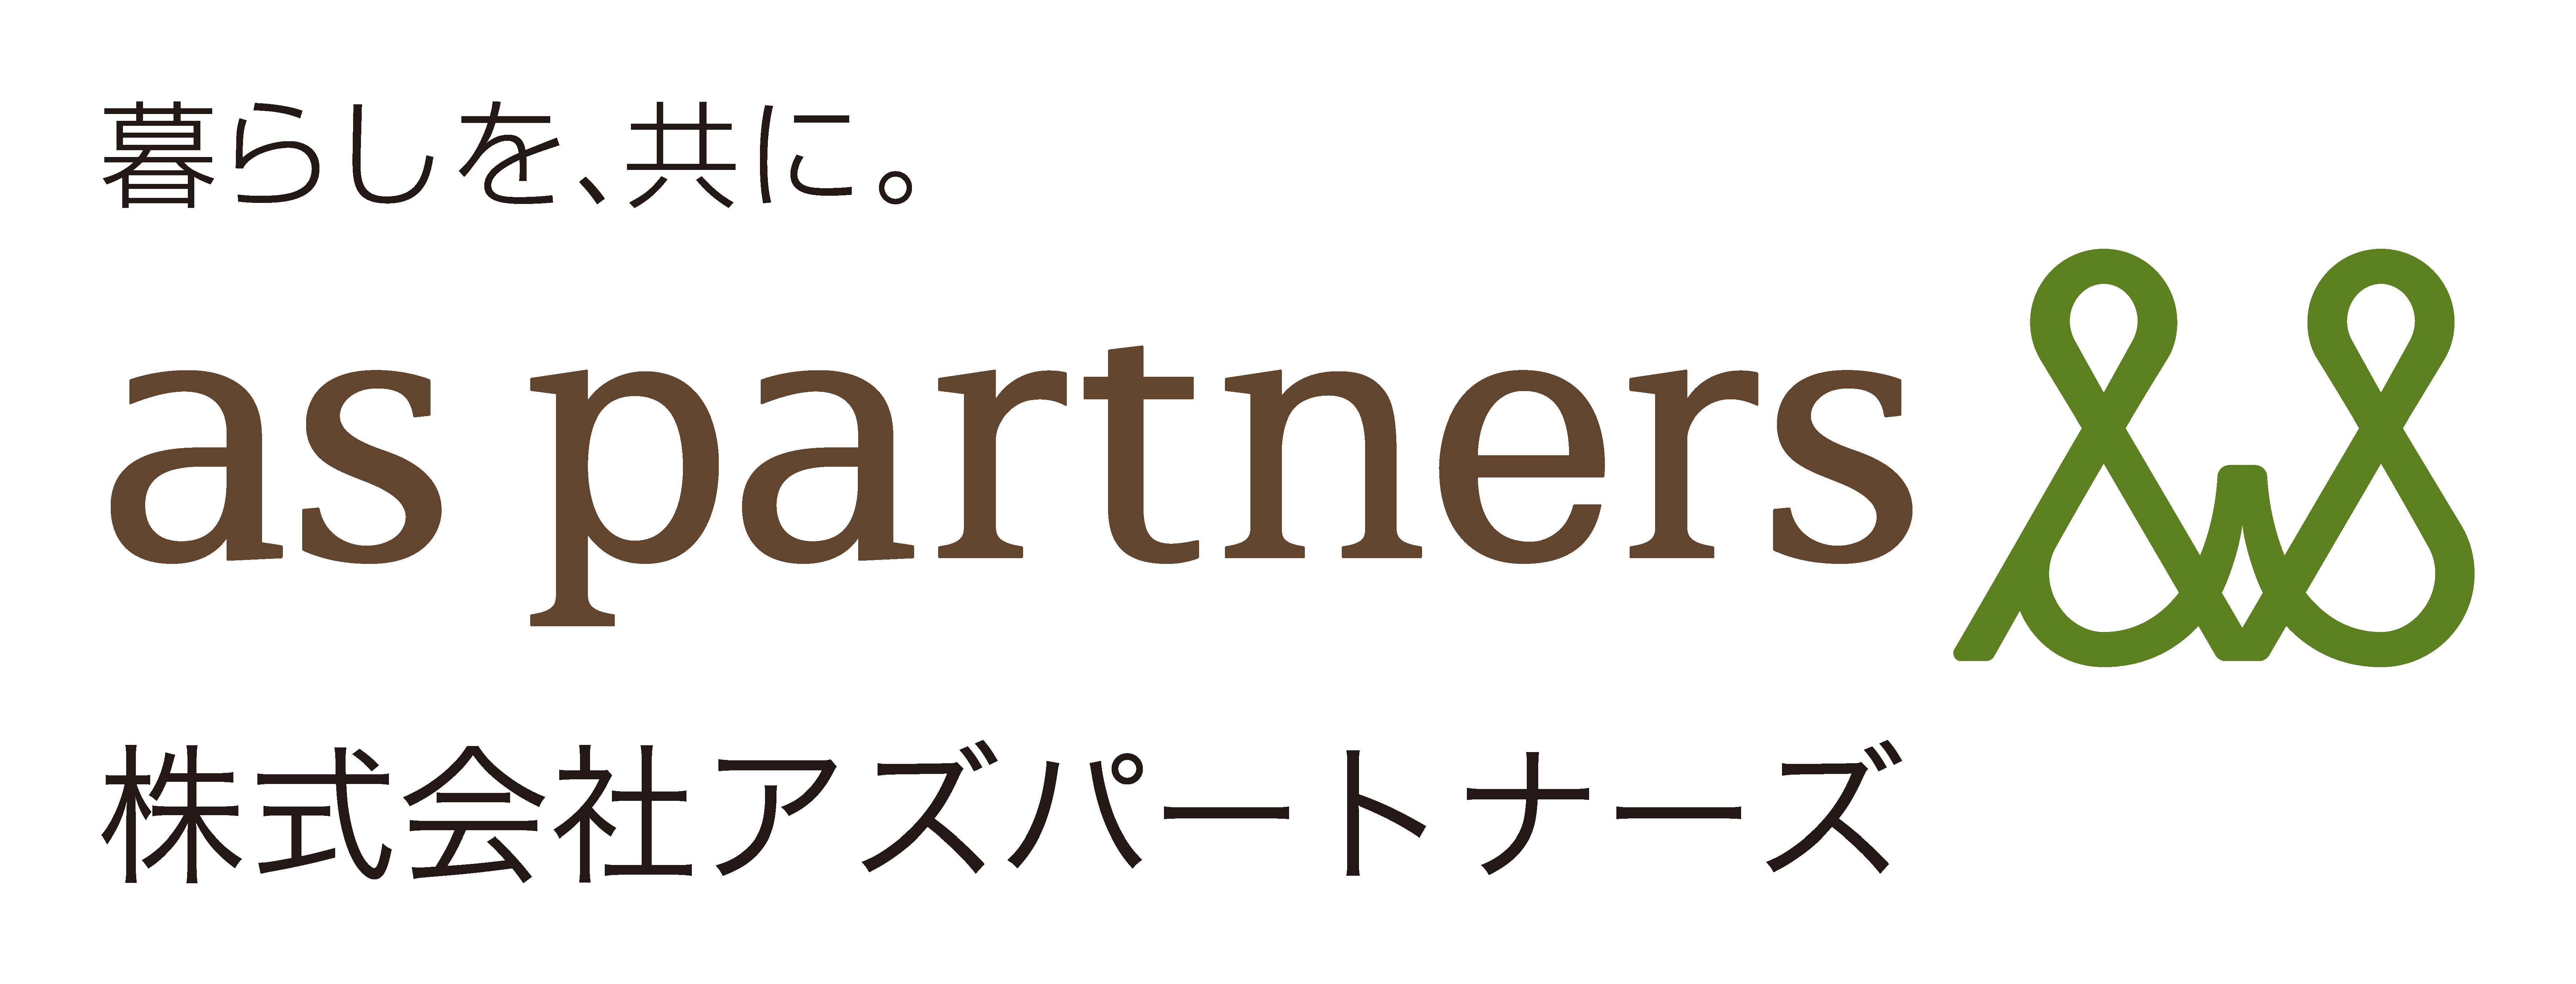 As Partners Co., Ltd.